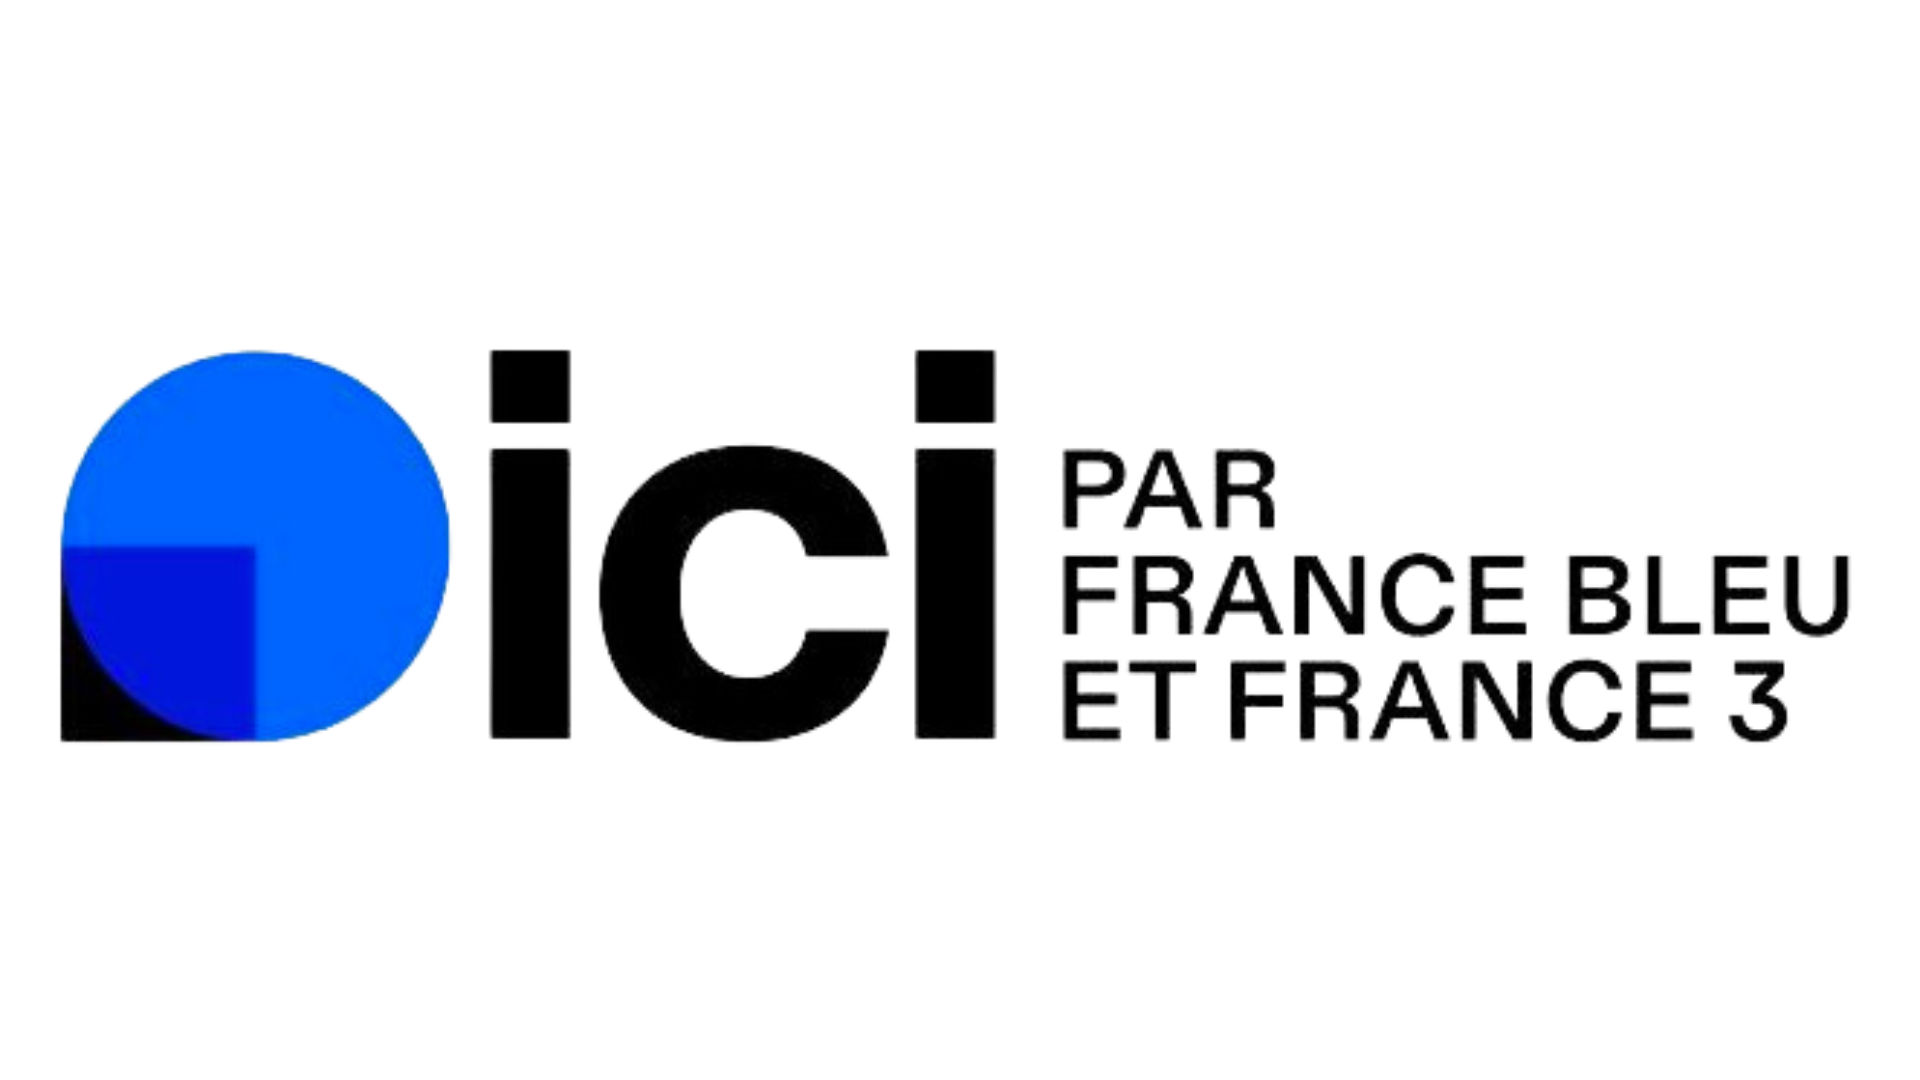 Ici par France Bleu et France 3 (logo)